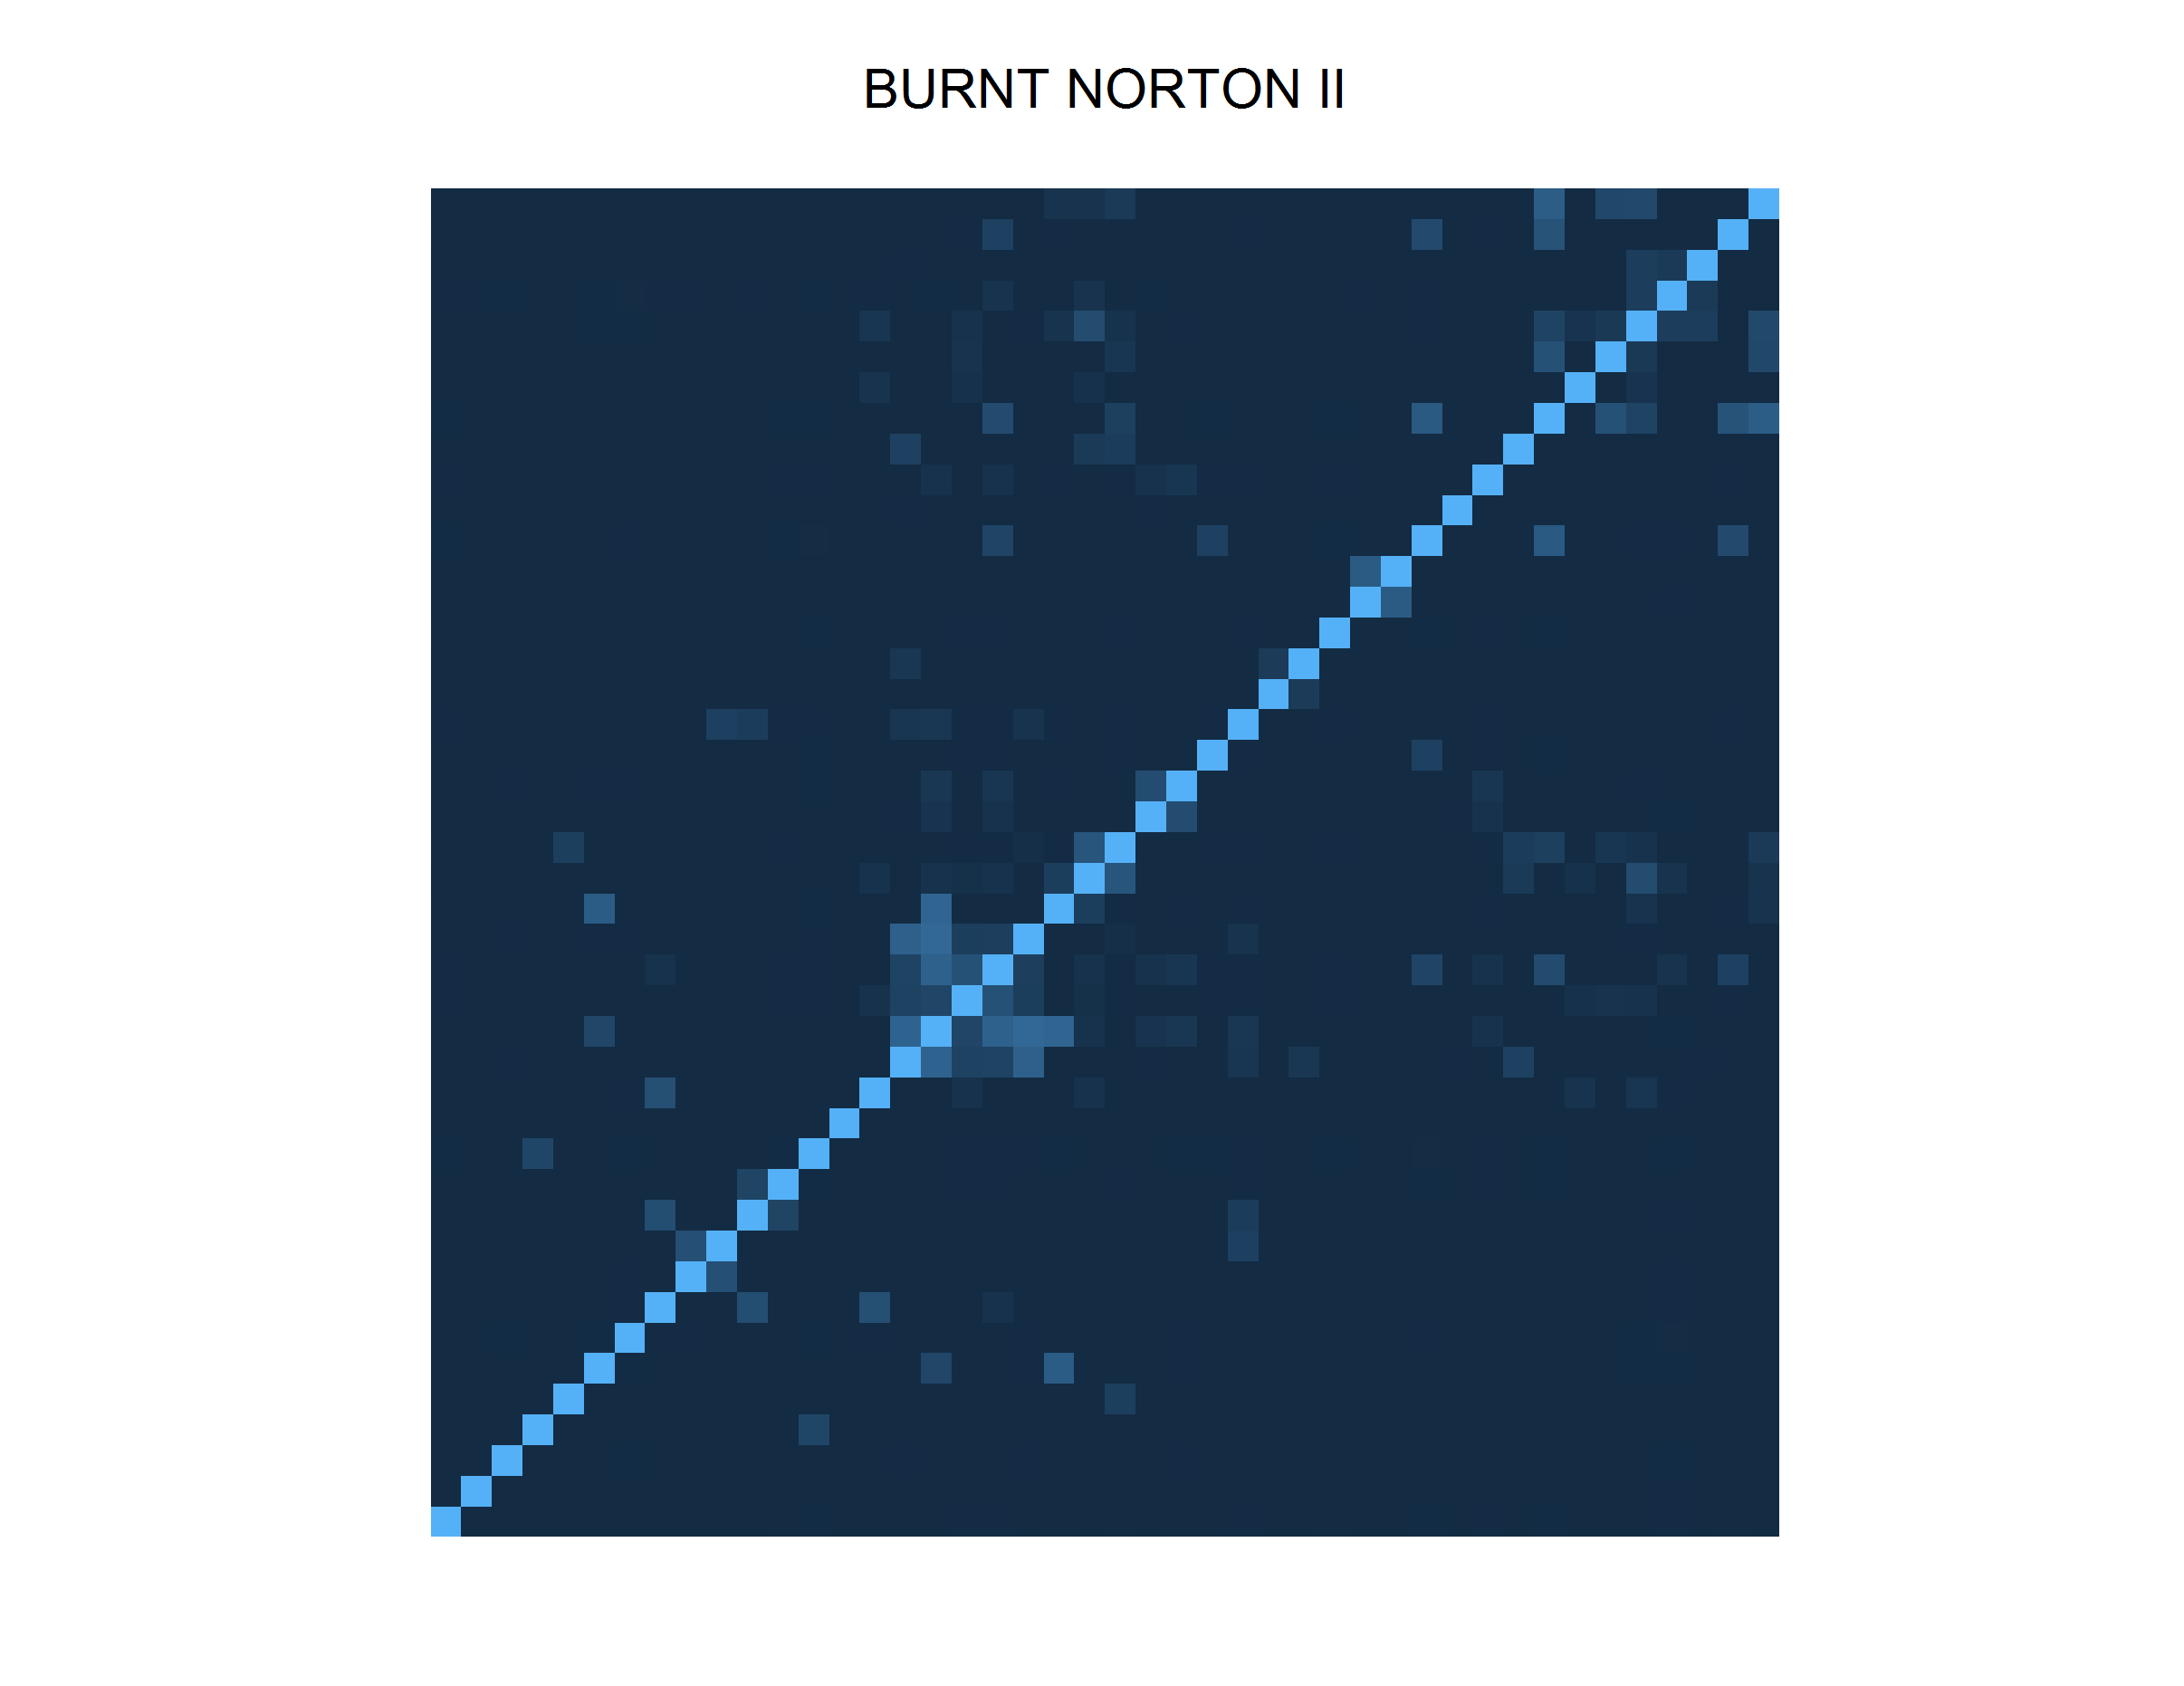 Burnt Norton II